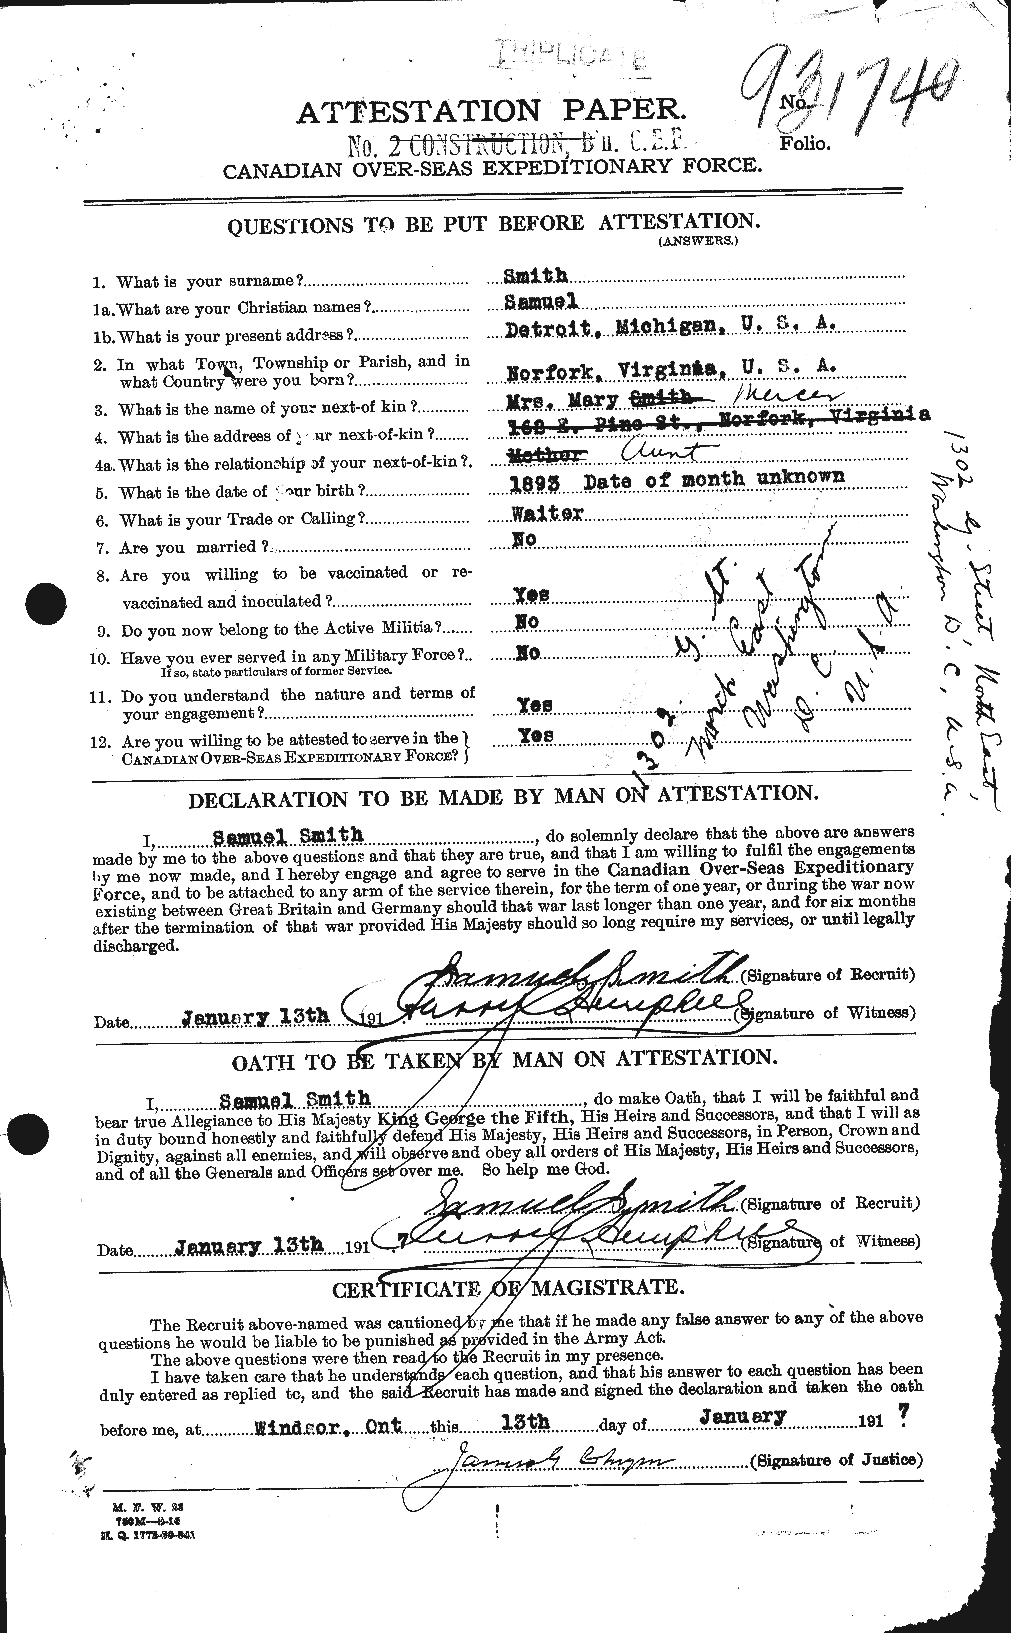 Dossiers du Personnel de la Première Guerre mondiale - CEC 108763a